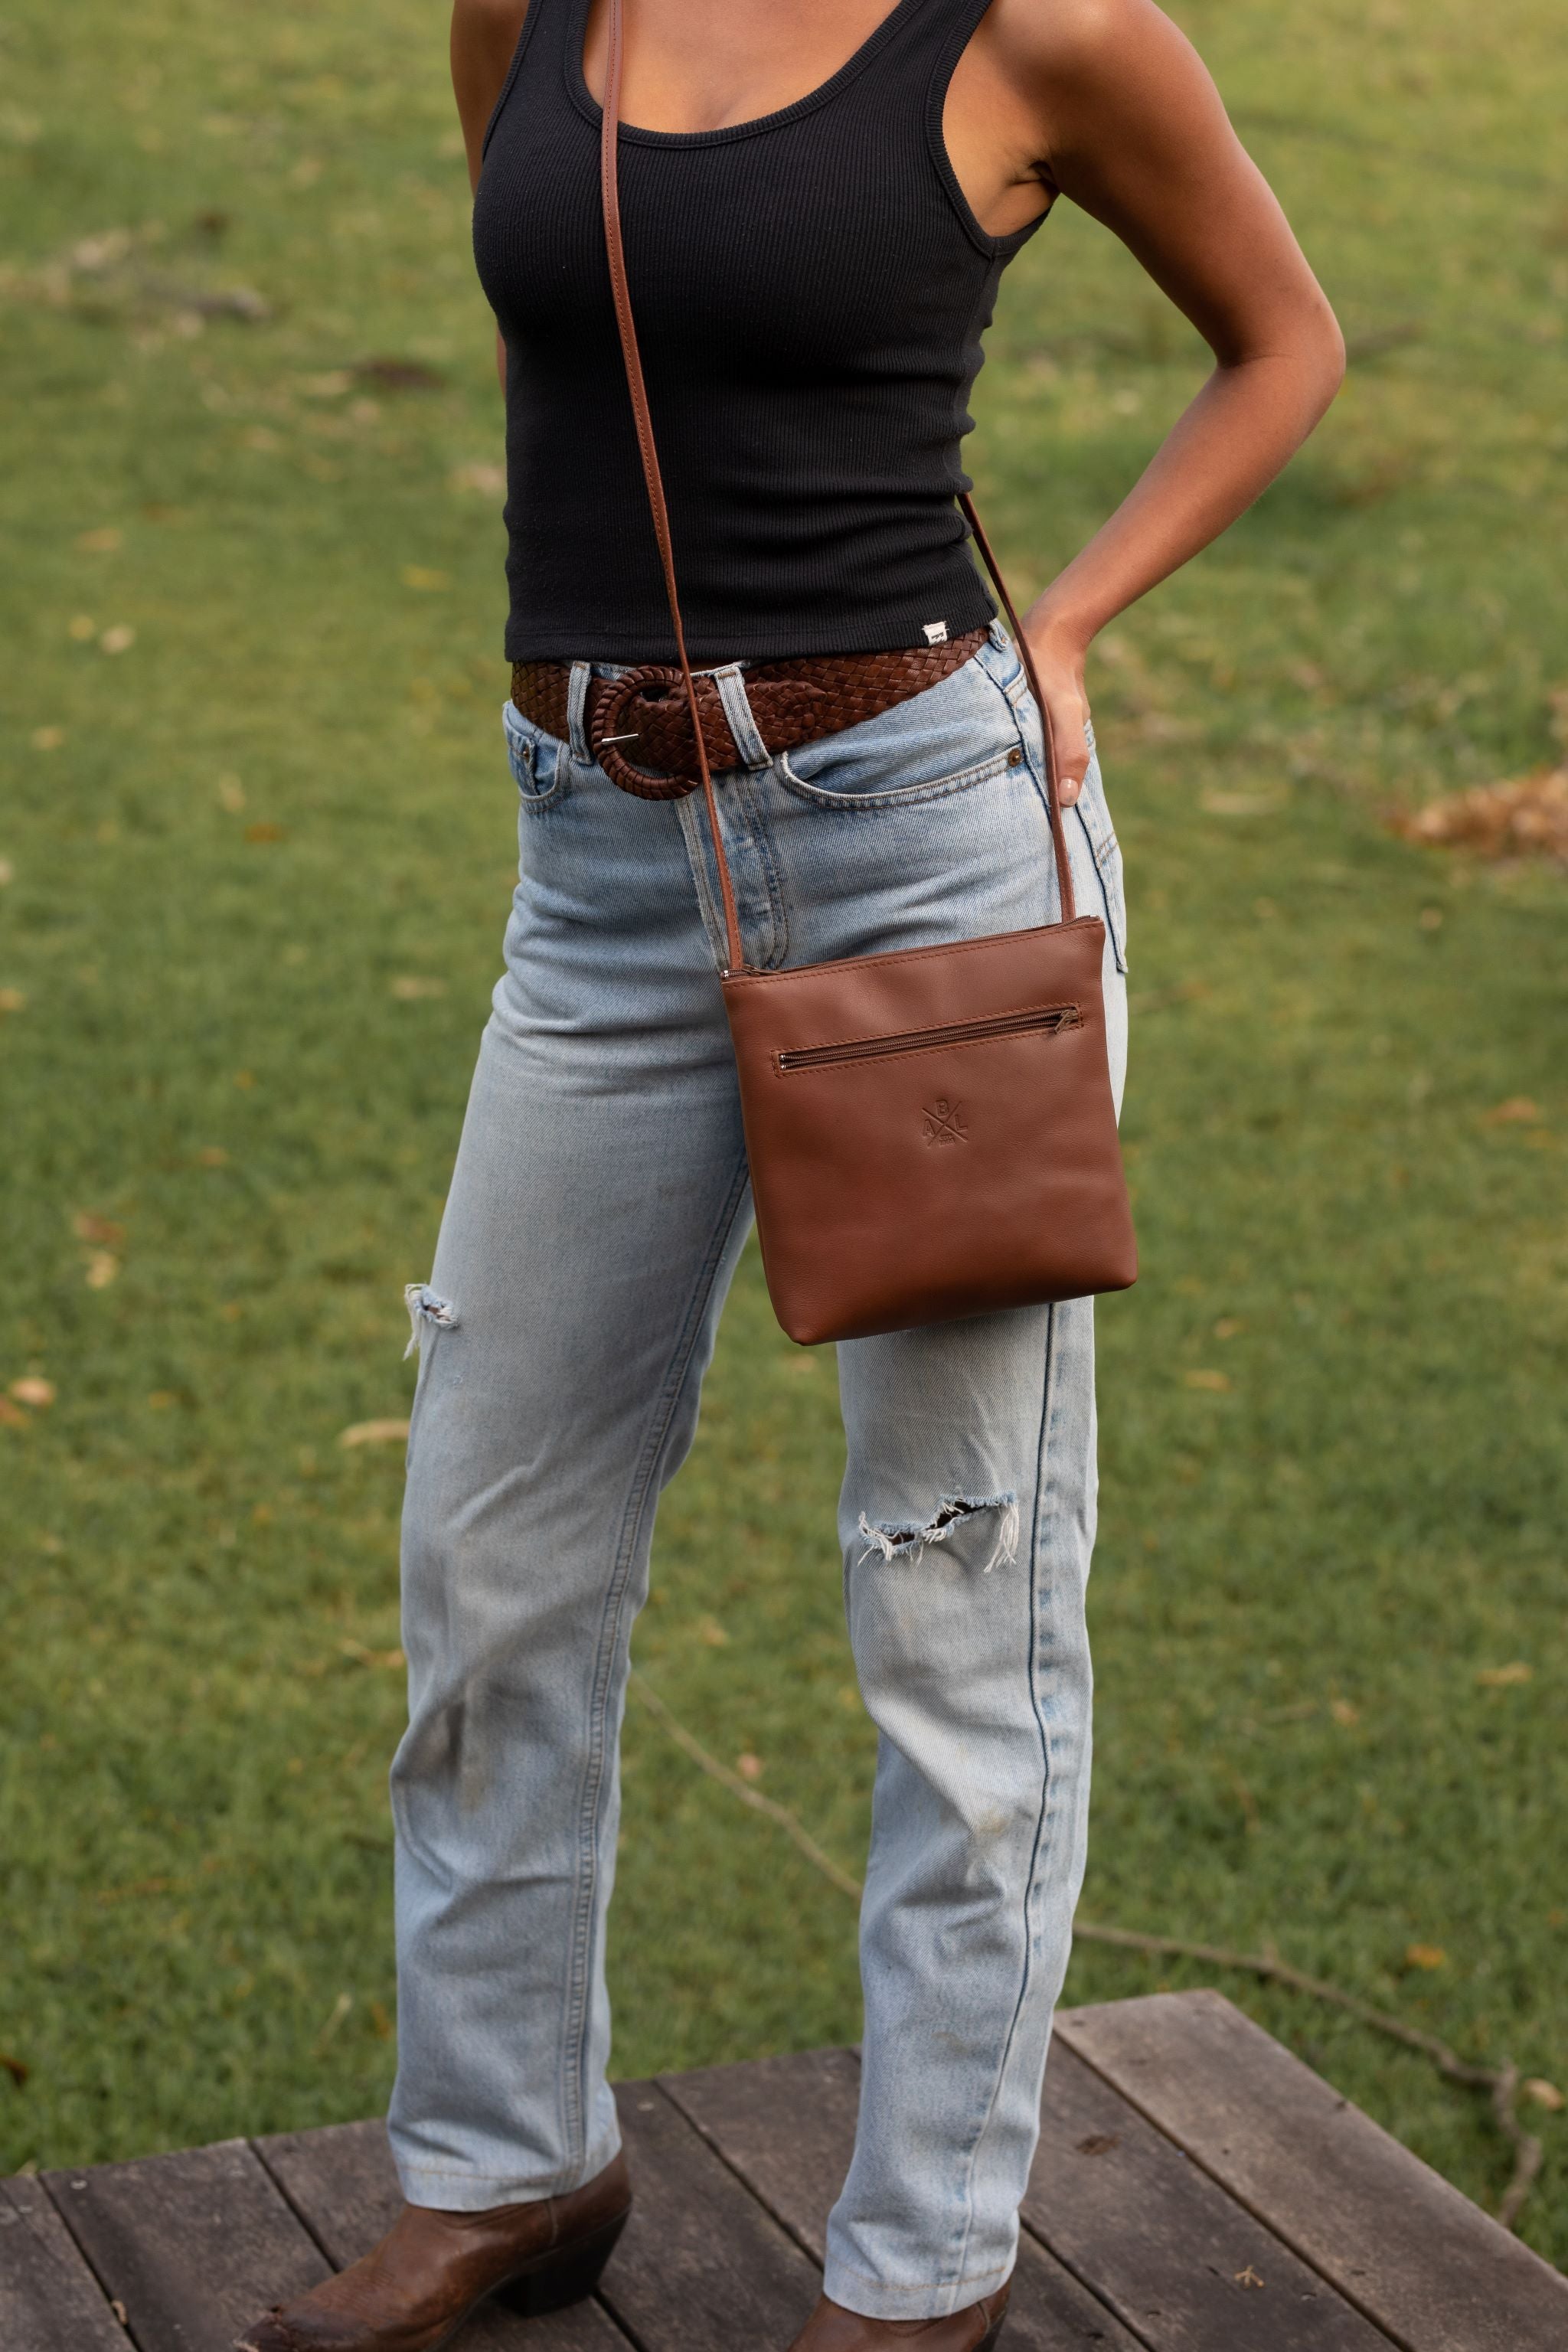 Ella Shoulder Bag